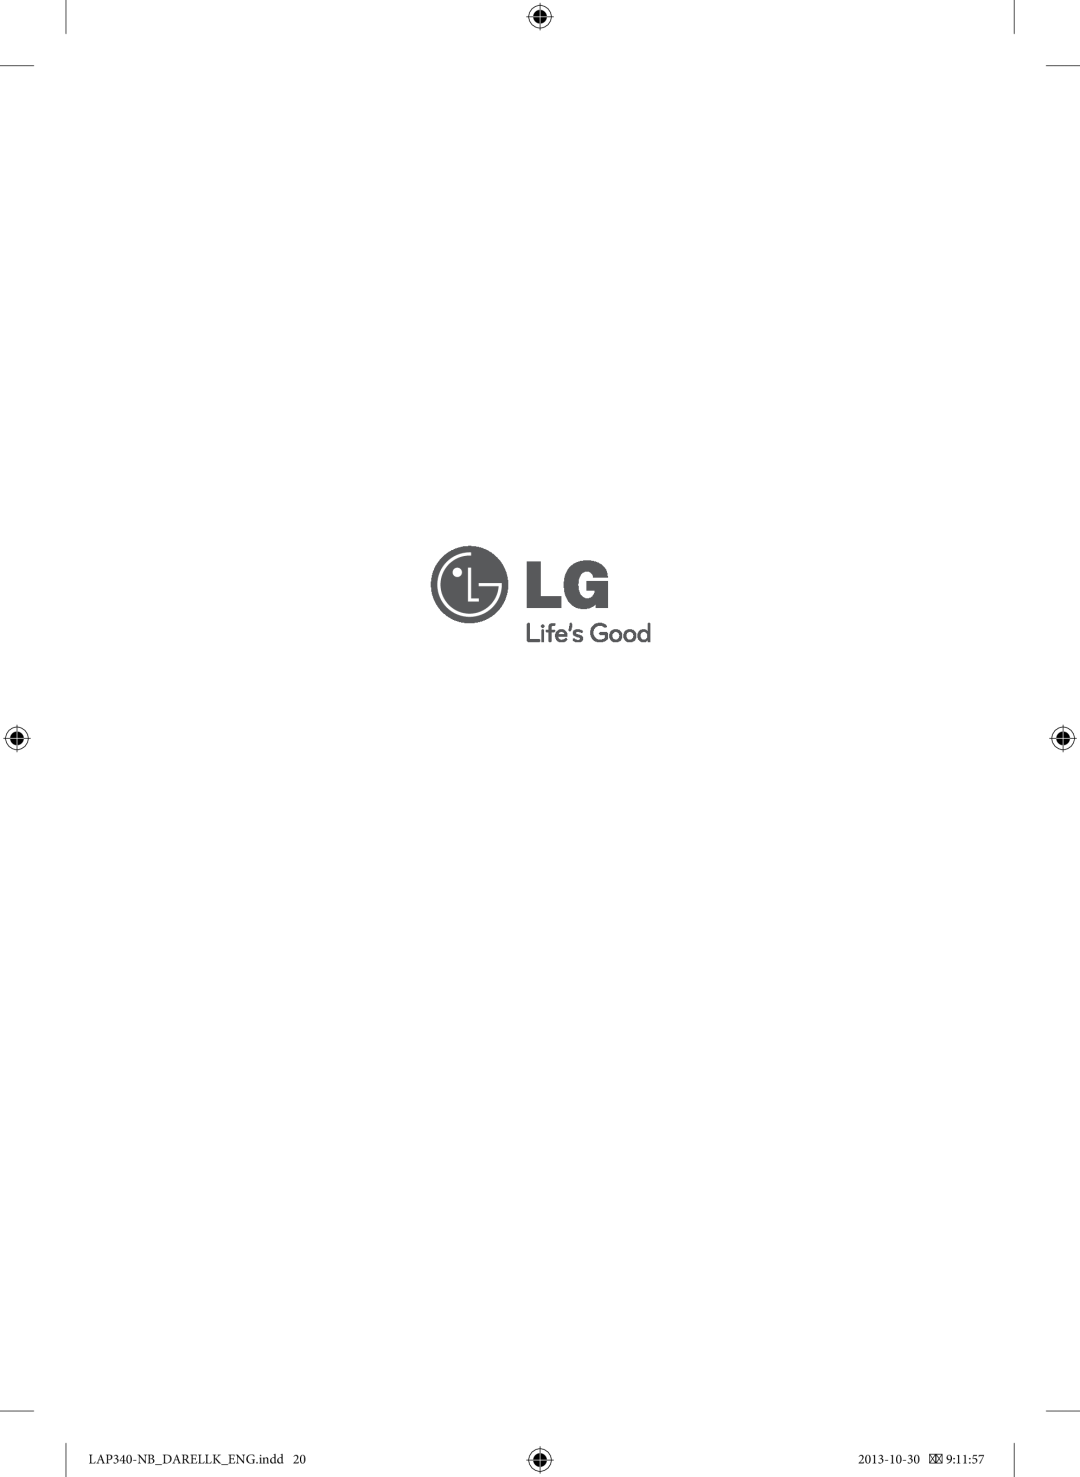 LG Electronics owner manual LAP340-NBDARELLKENG.indd, 2013-10-30 